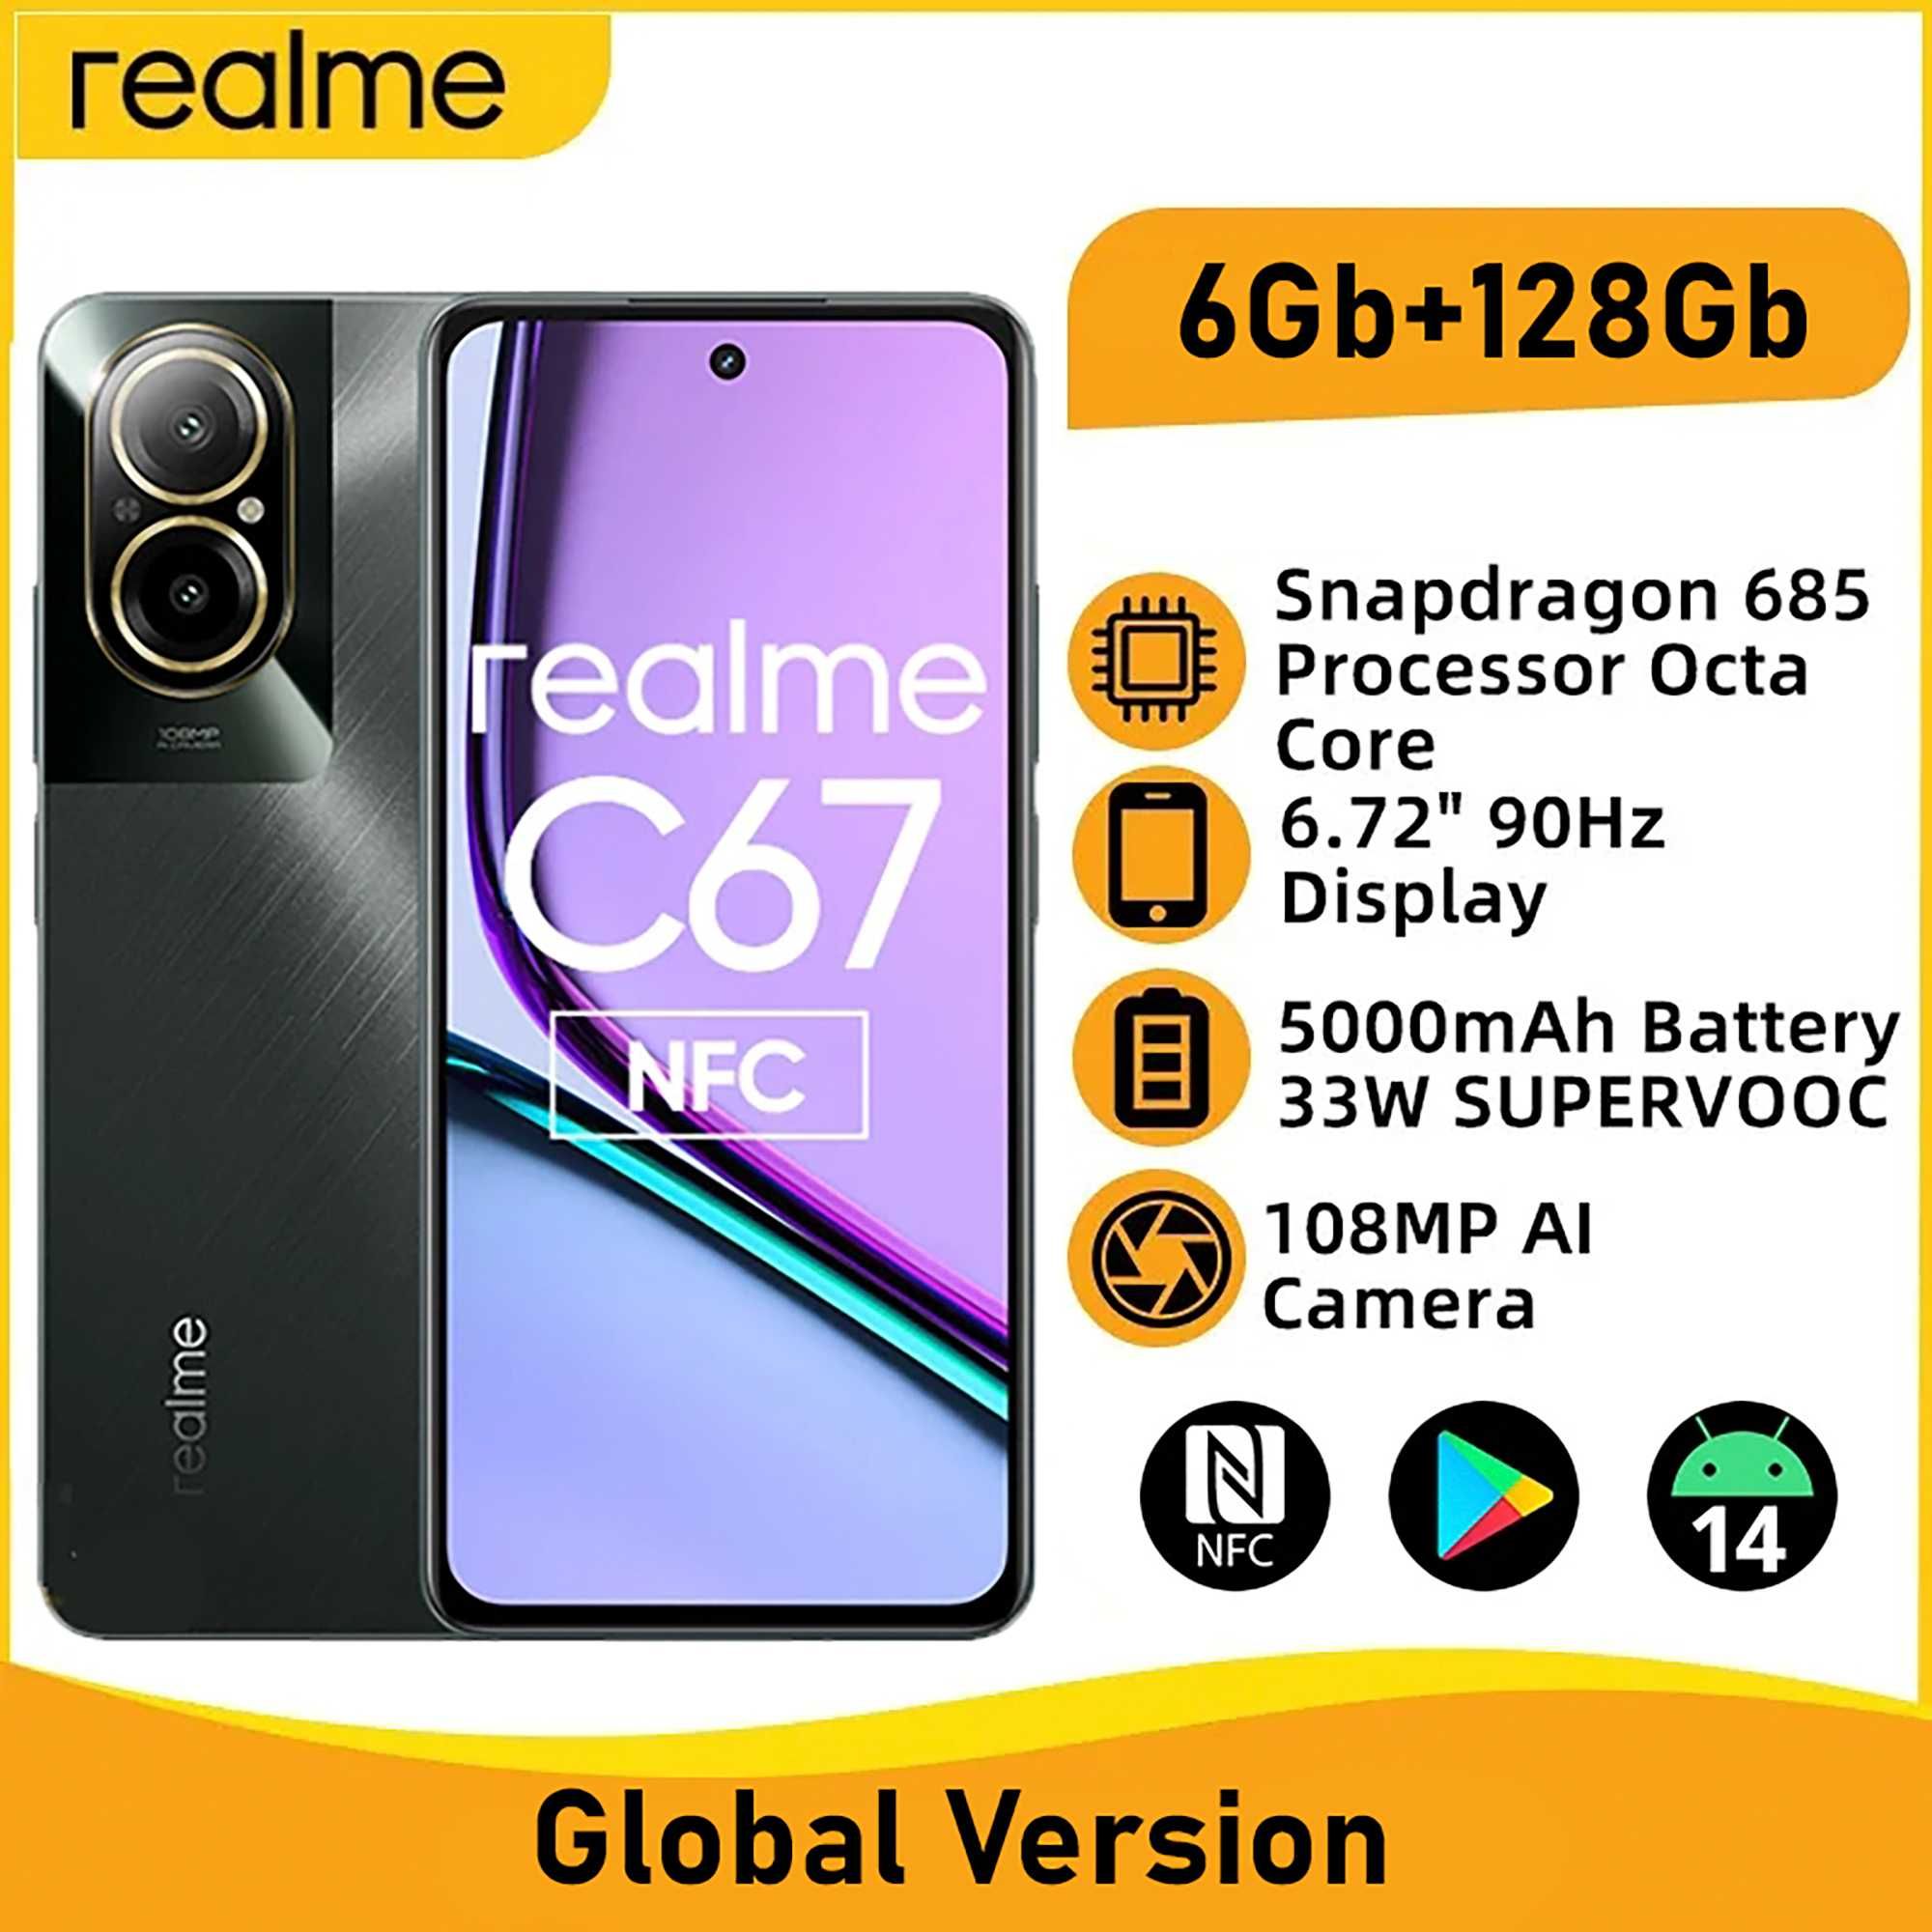 Realme C67 6/128Gb NFC